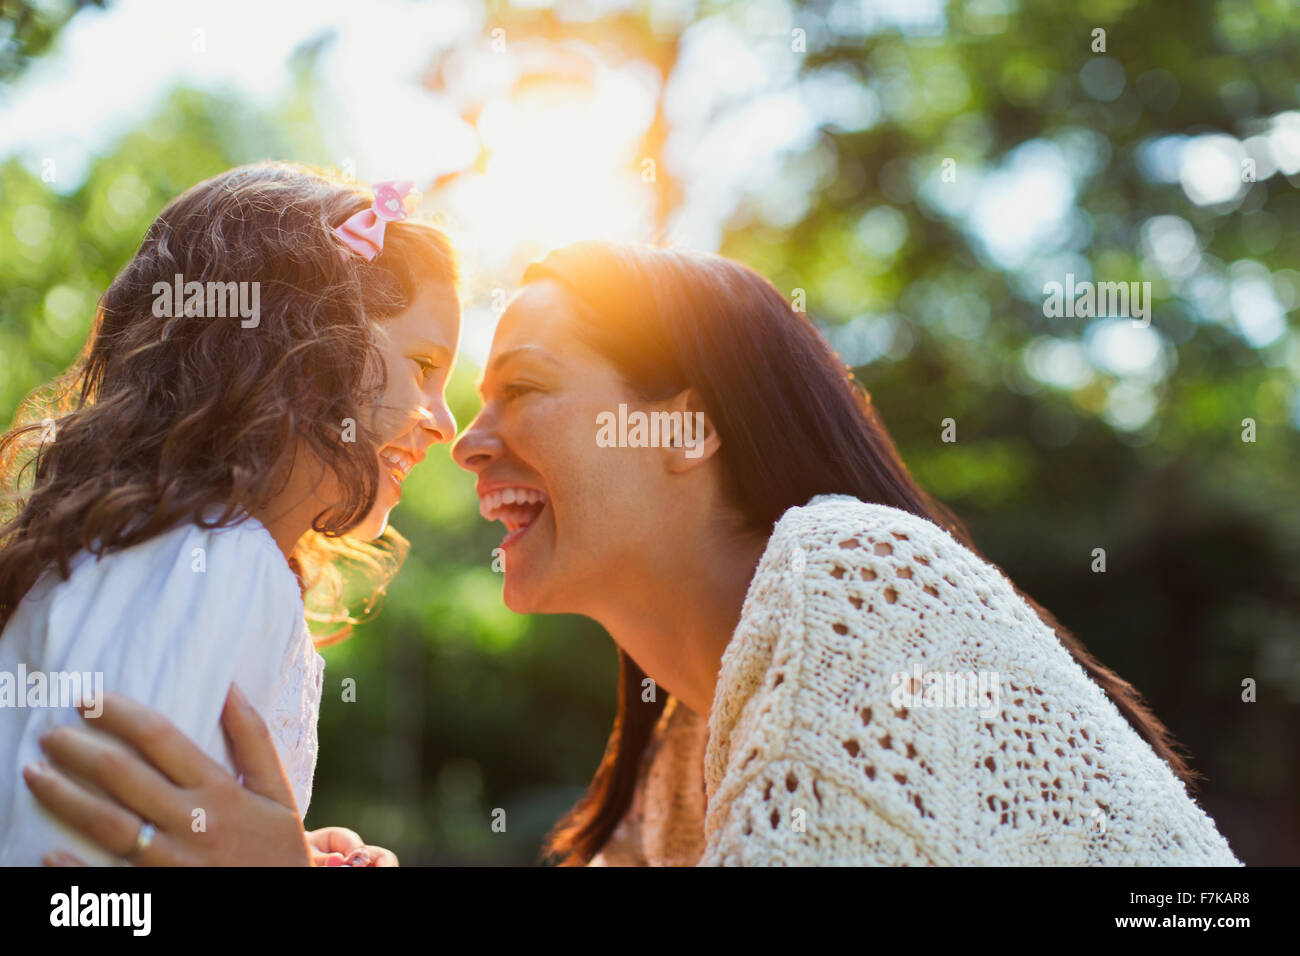 Mère et fille enthousiaste smiling face à face Banque D'Images